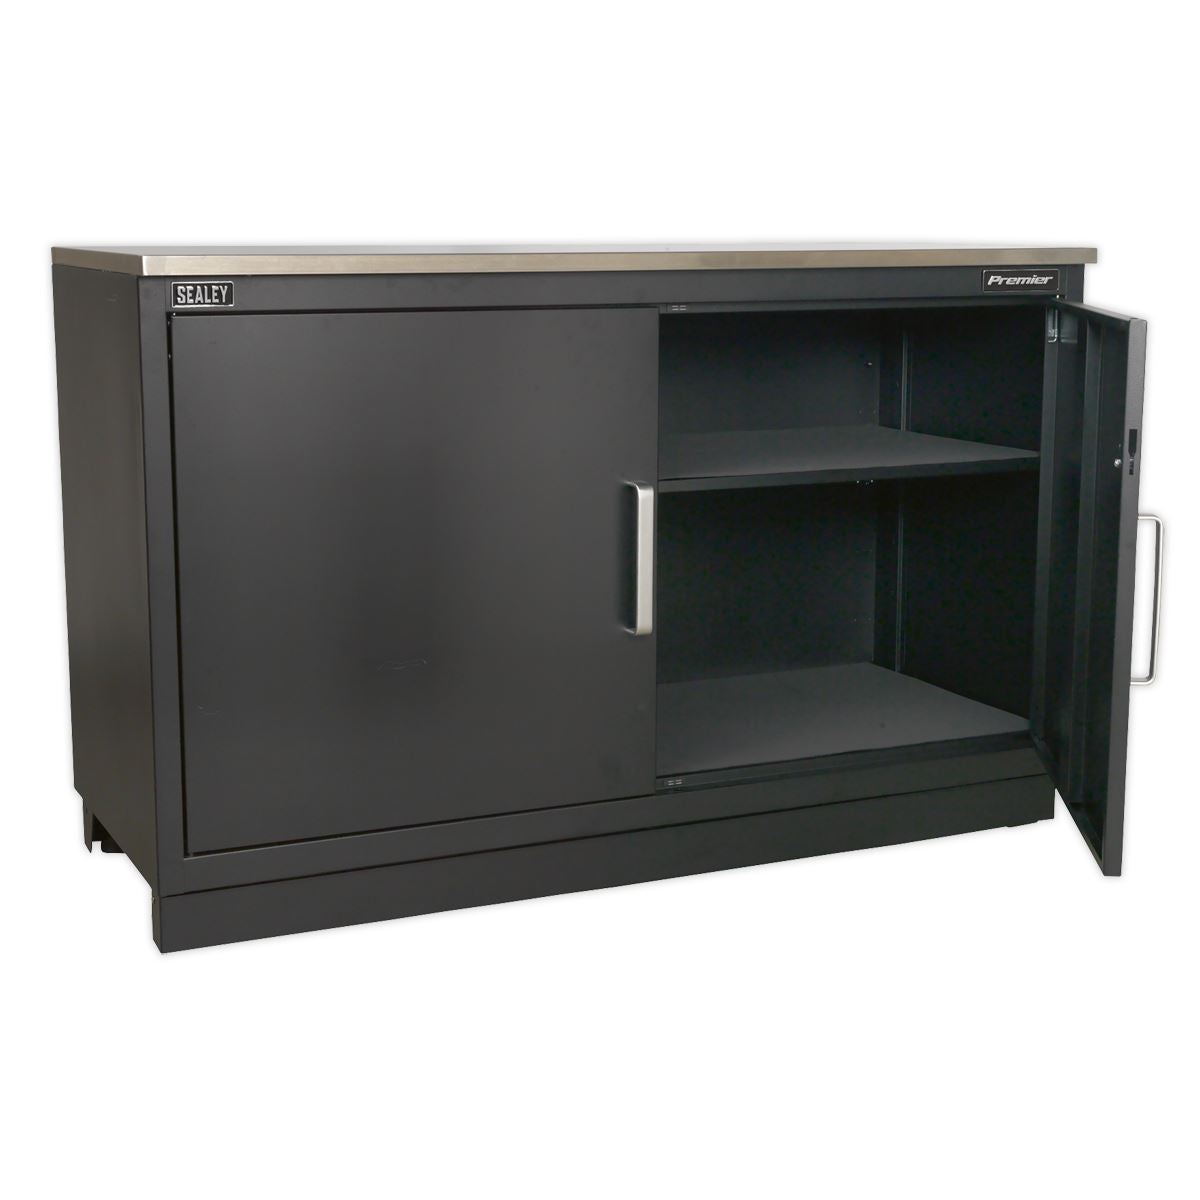 Sealey Premier Modular Floor Cabinet 2 Door 1550mm Heavy-Duty